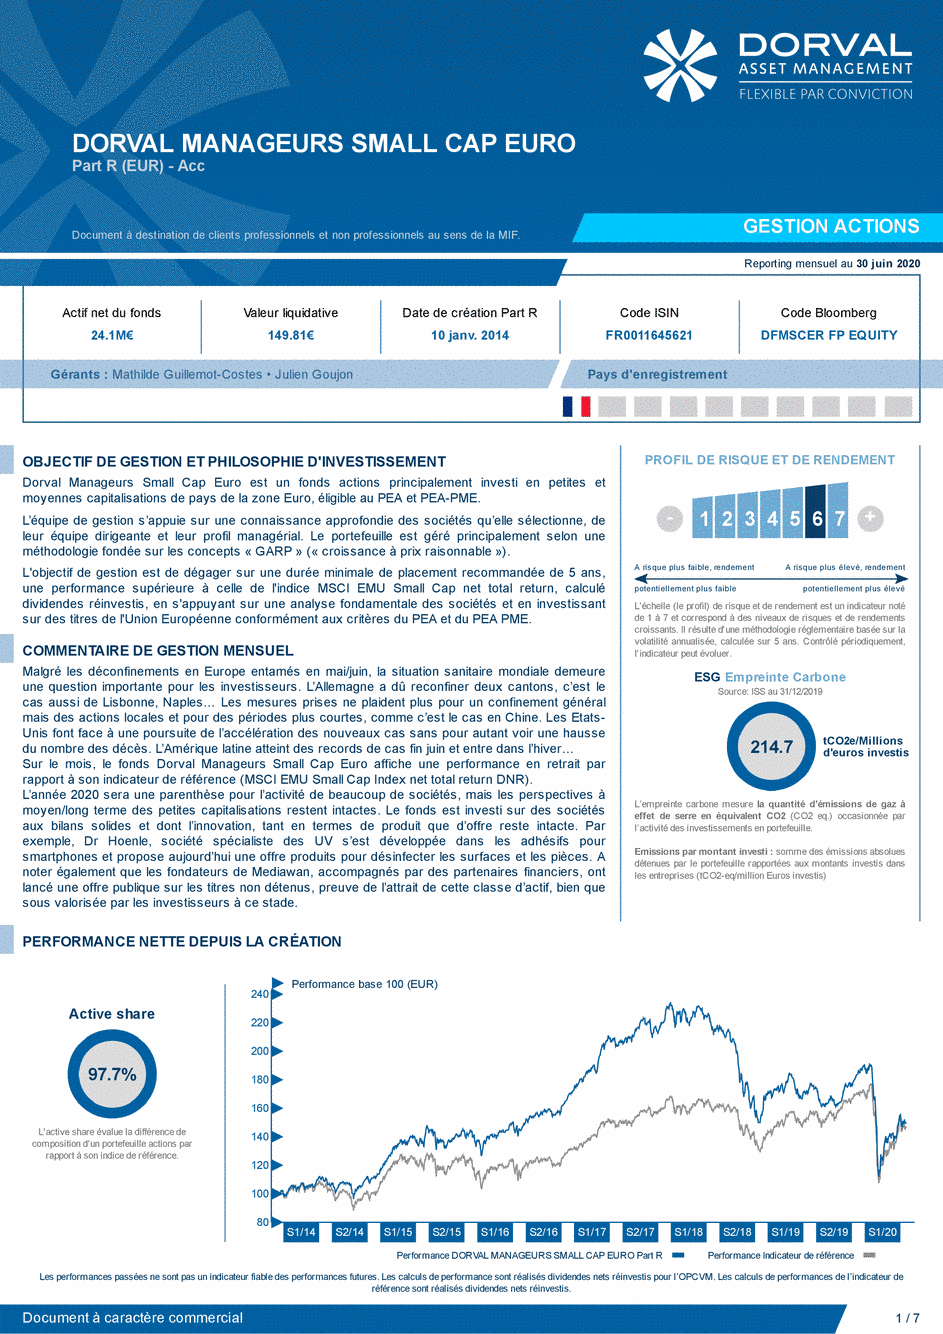 Reporting DORVAL MANAGEURS SMALL CAP EURO Part C - 30/06/2020 - Français